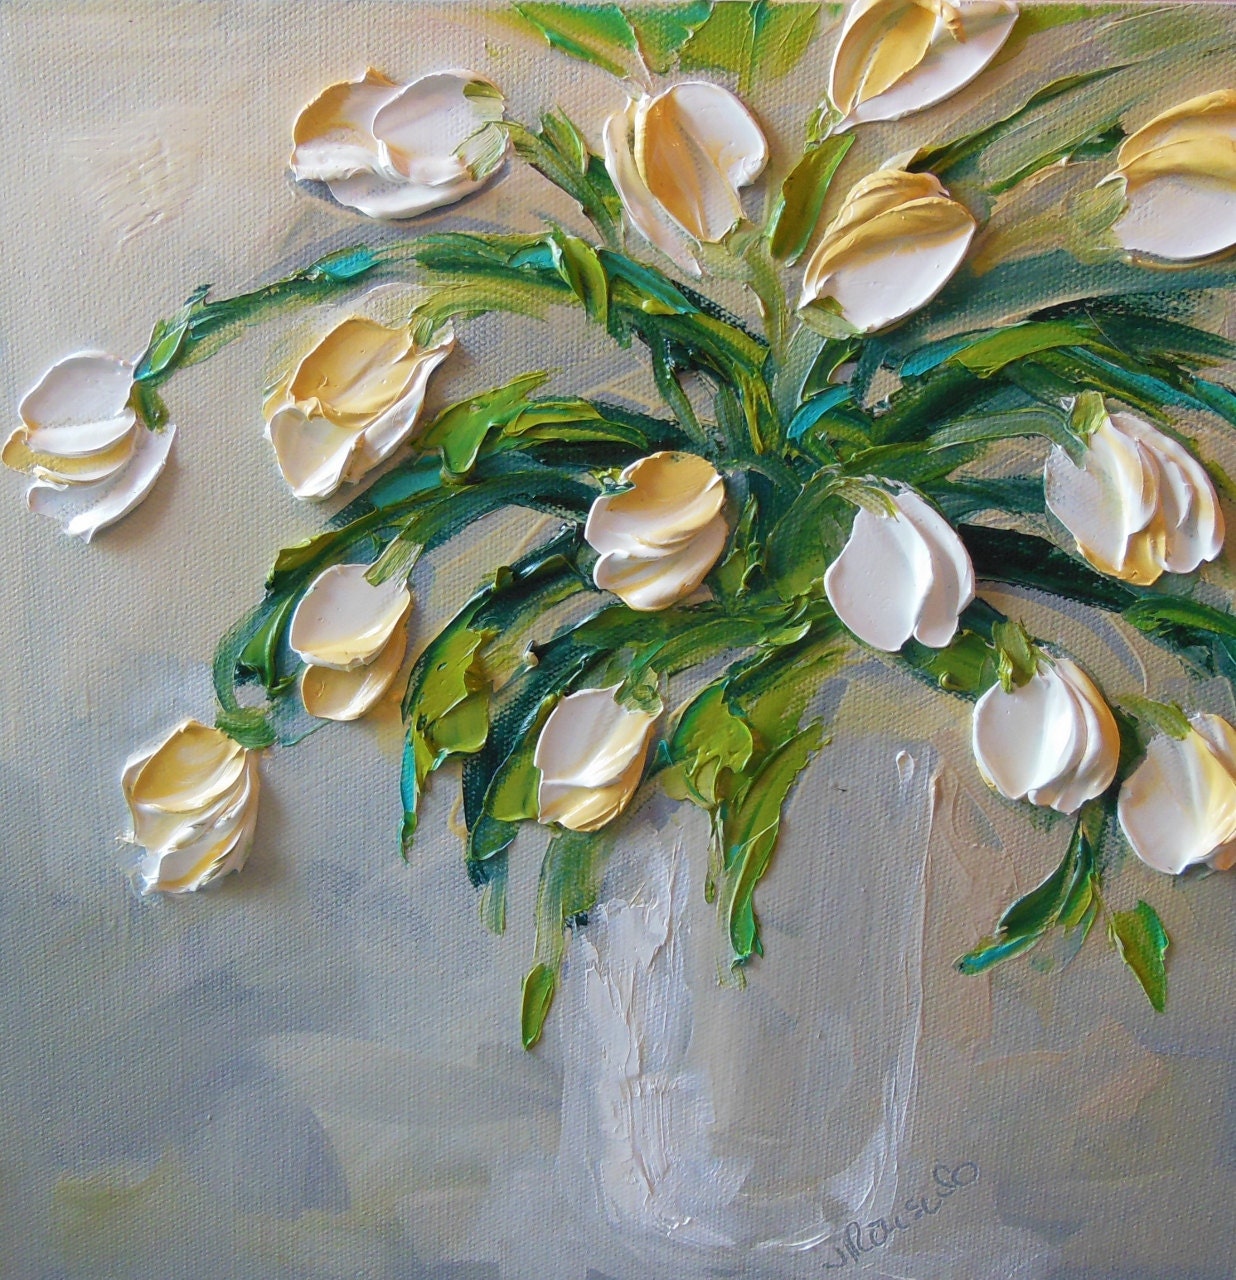 Oil Painting Art White Tulips Impasto on Canvas Jan Ironside